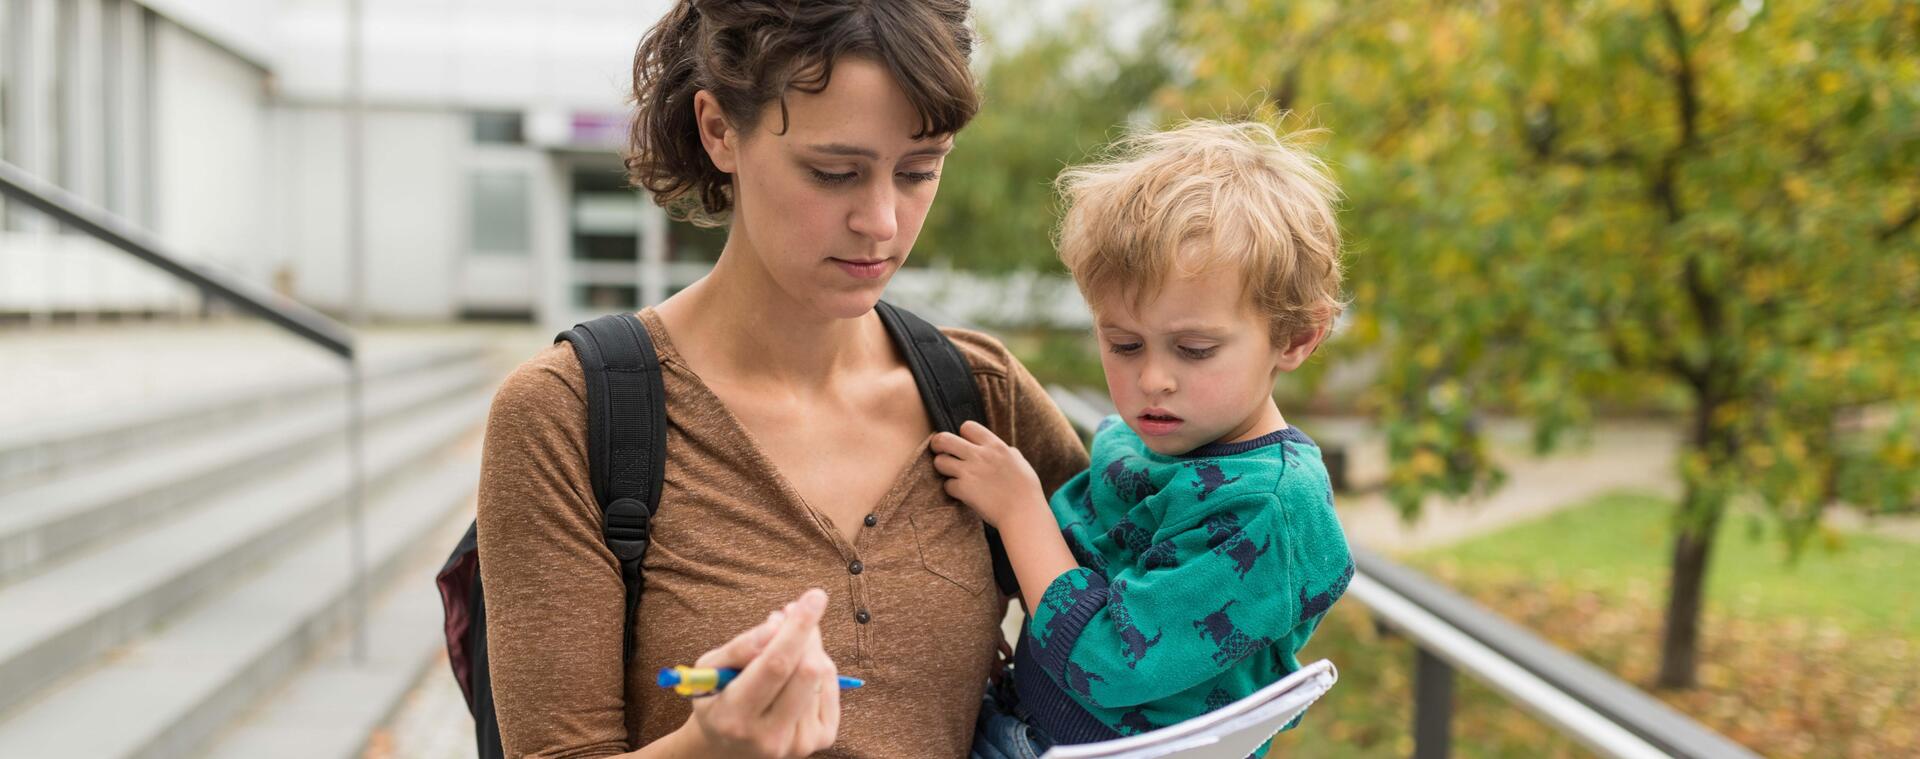 Eine Studentin hält ihr Kind auf dem Arm und füllt ein Formular aus